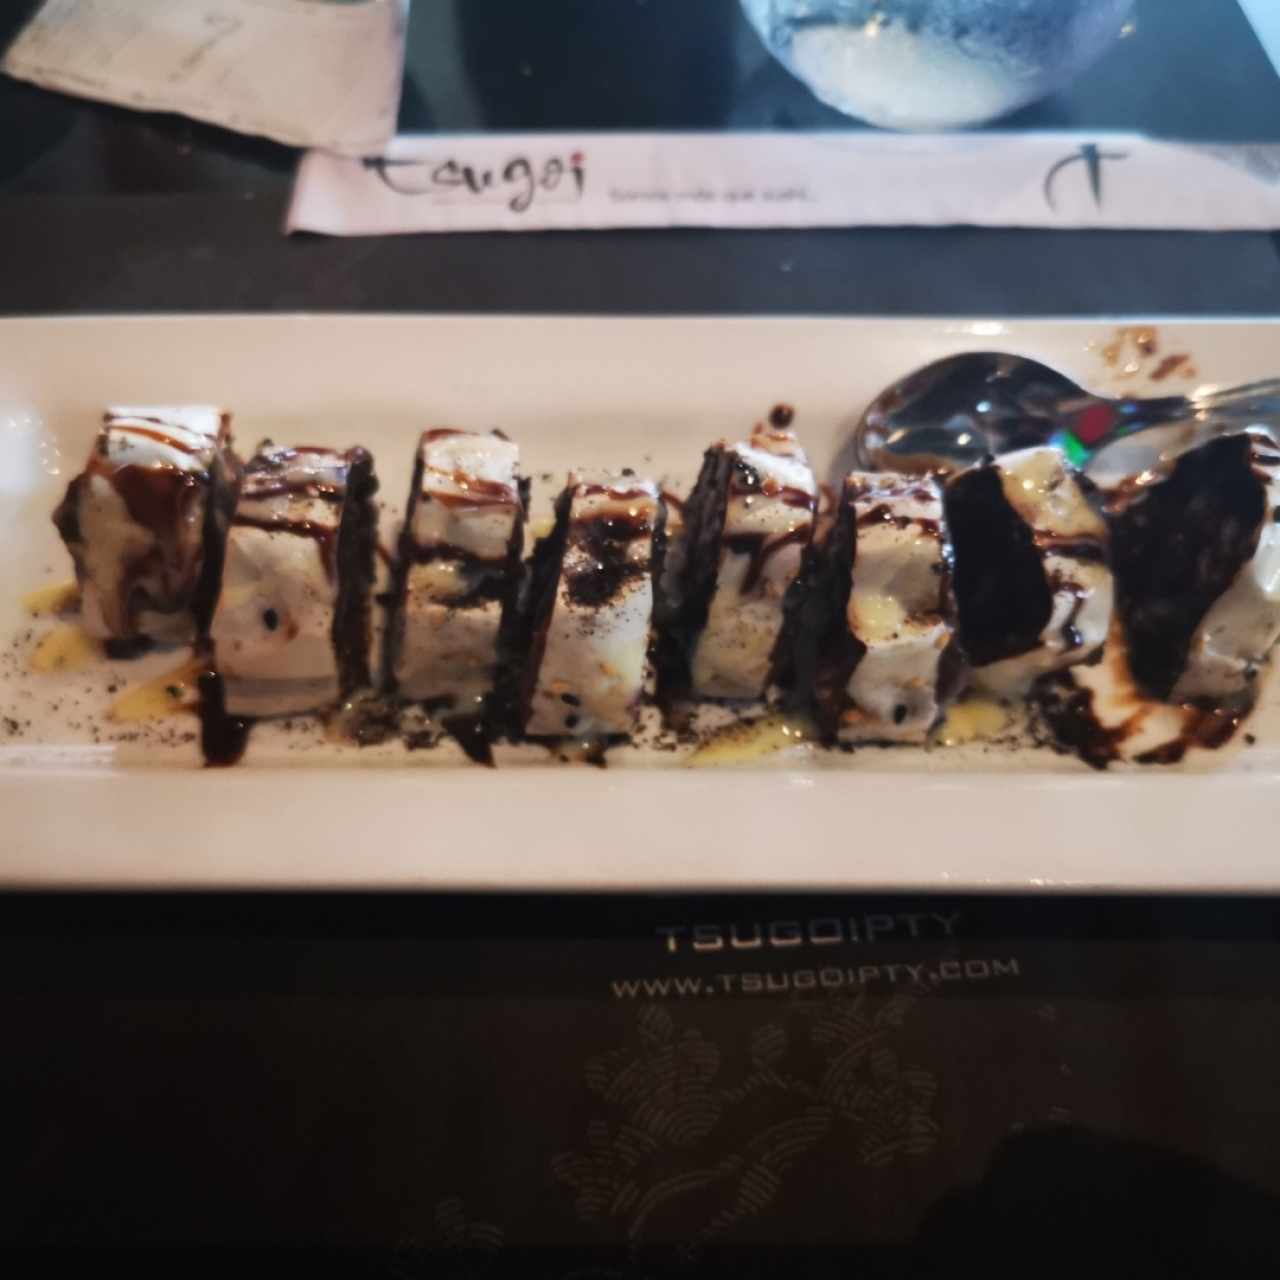 brownie con helado en forma de rollo de sushi